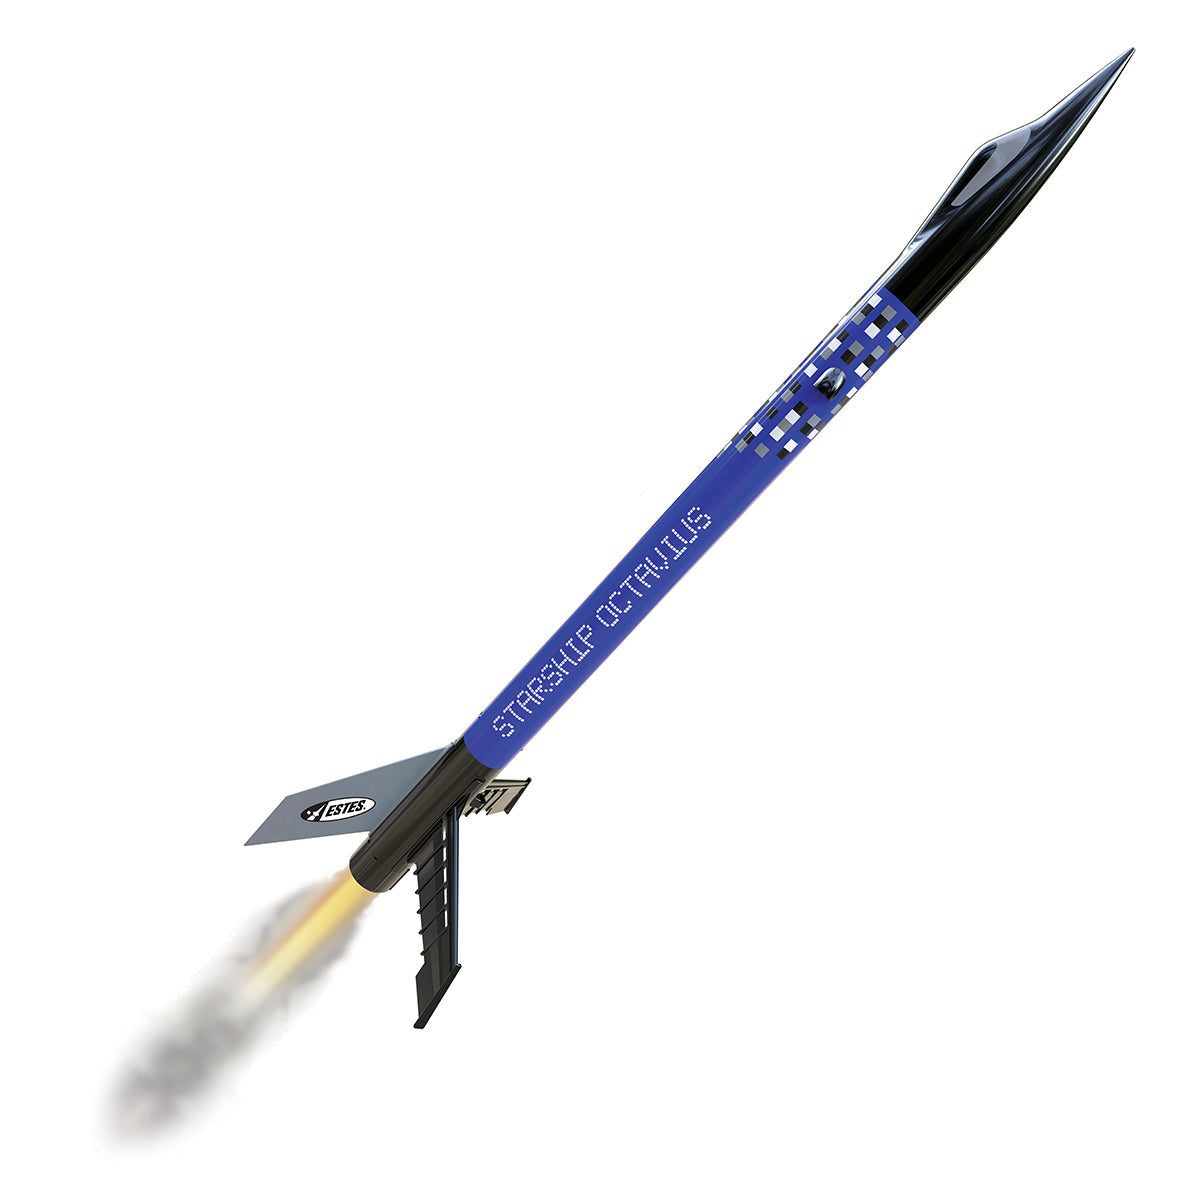 EST7284	Starship Octavius rocket kit Beginner